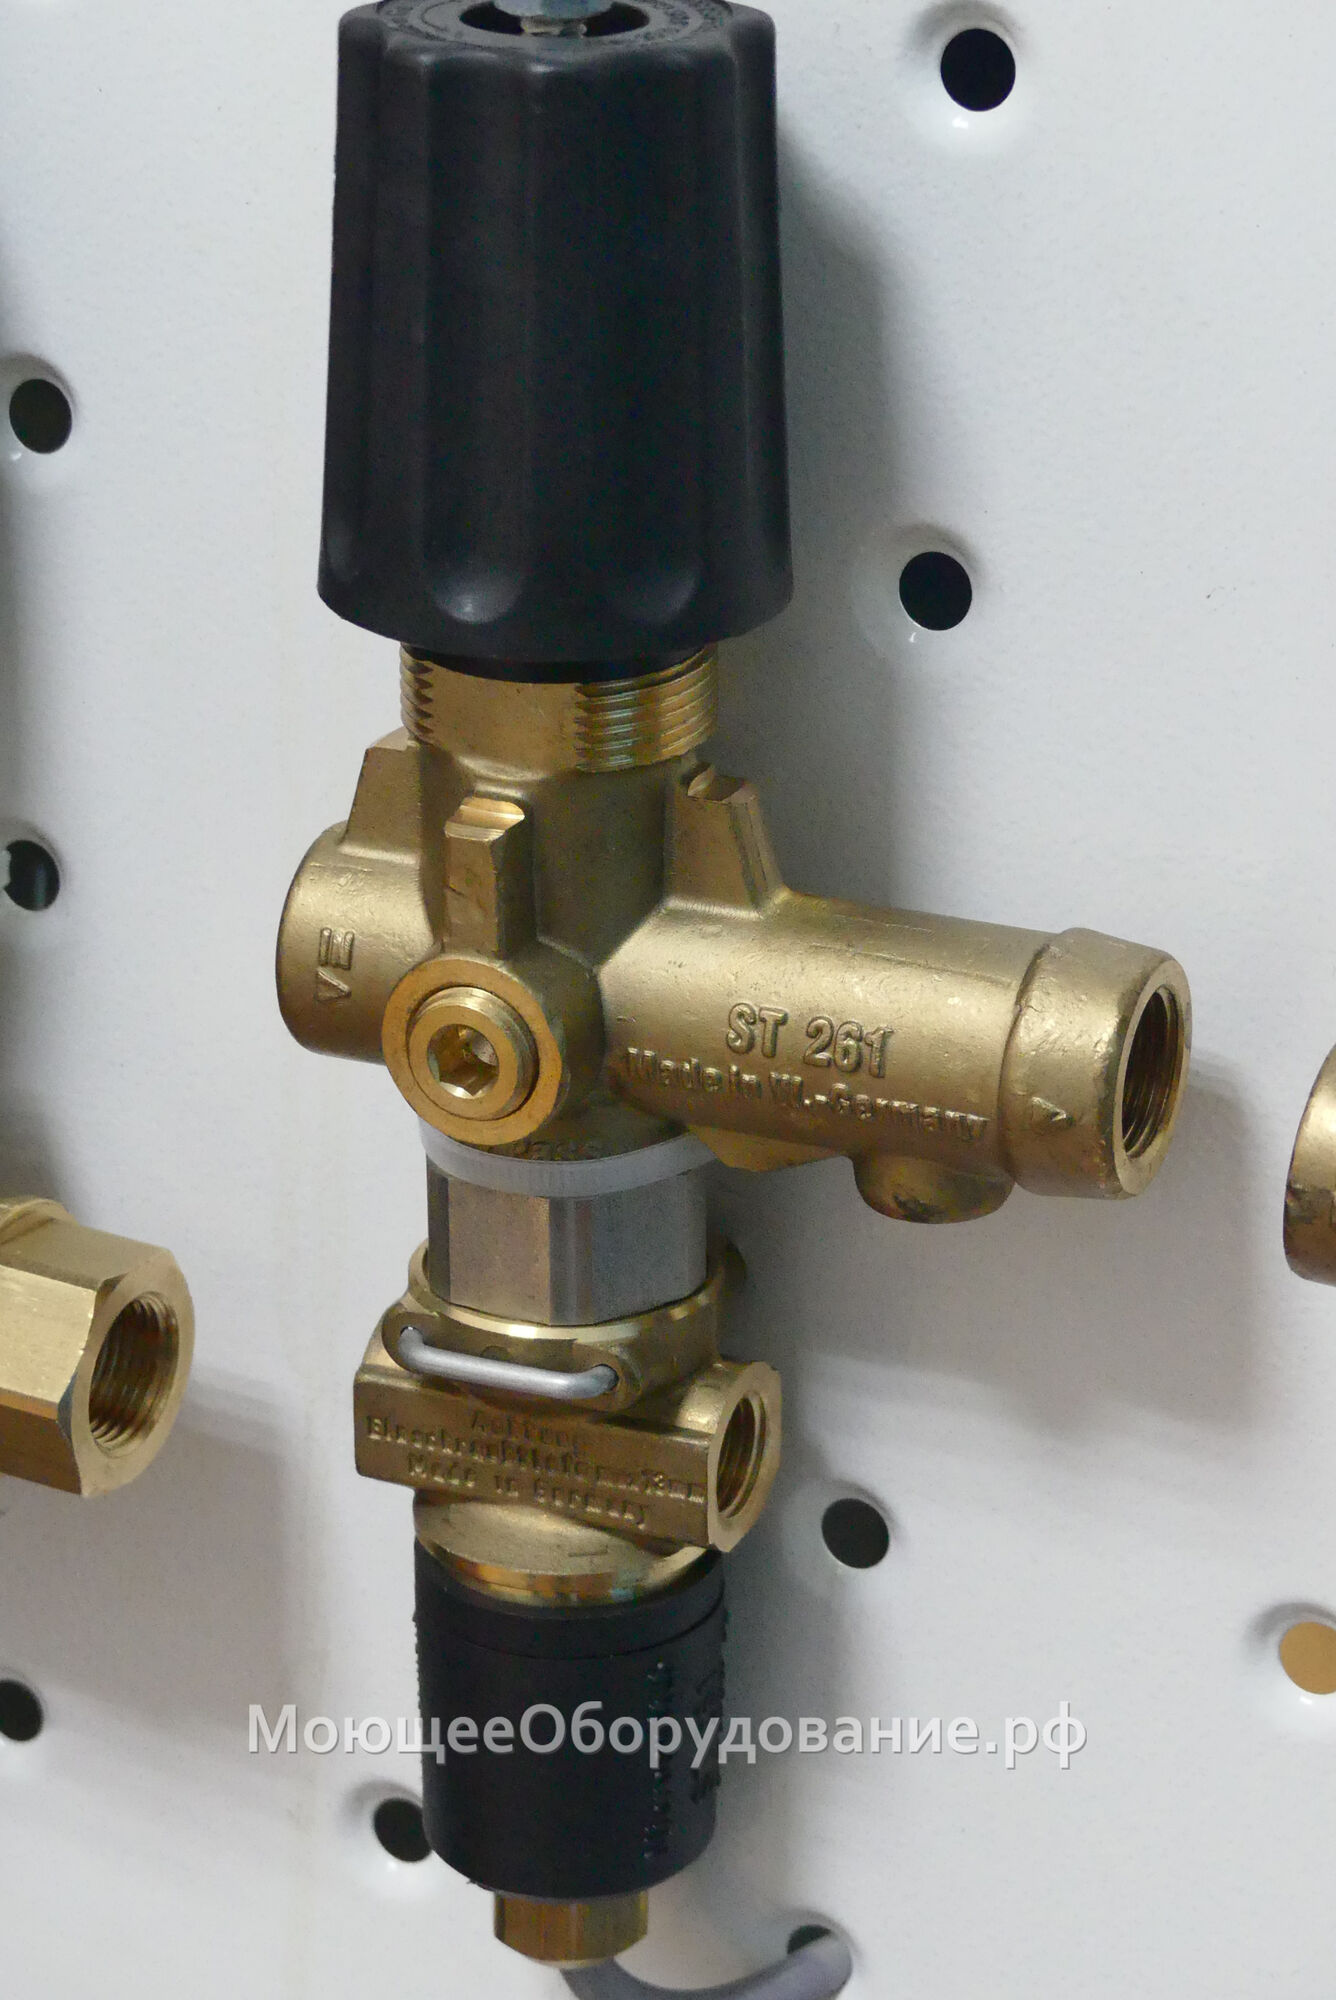 Регулятор давления для насоса высокого давления ST-261 TotalStop (250бар, 30л/мин)